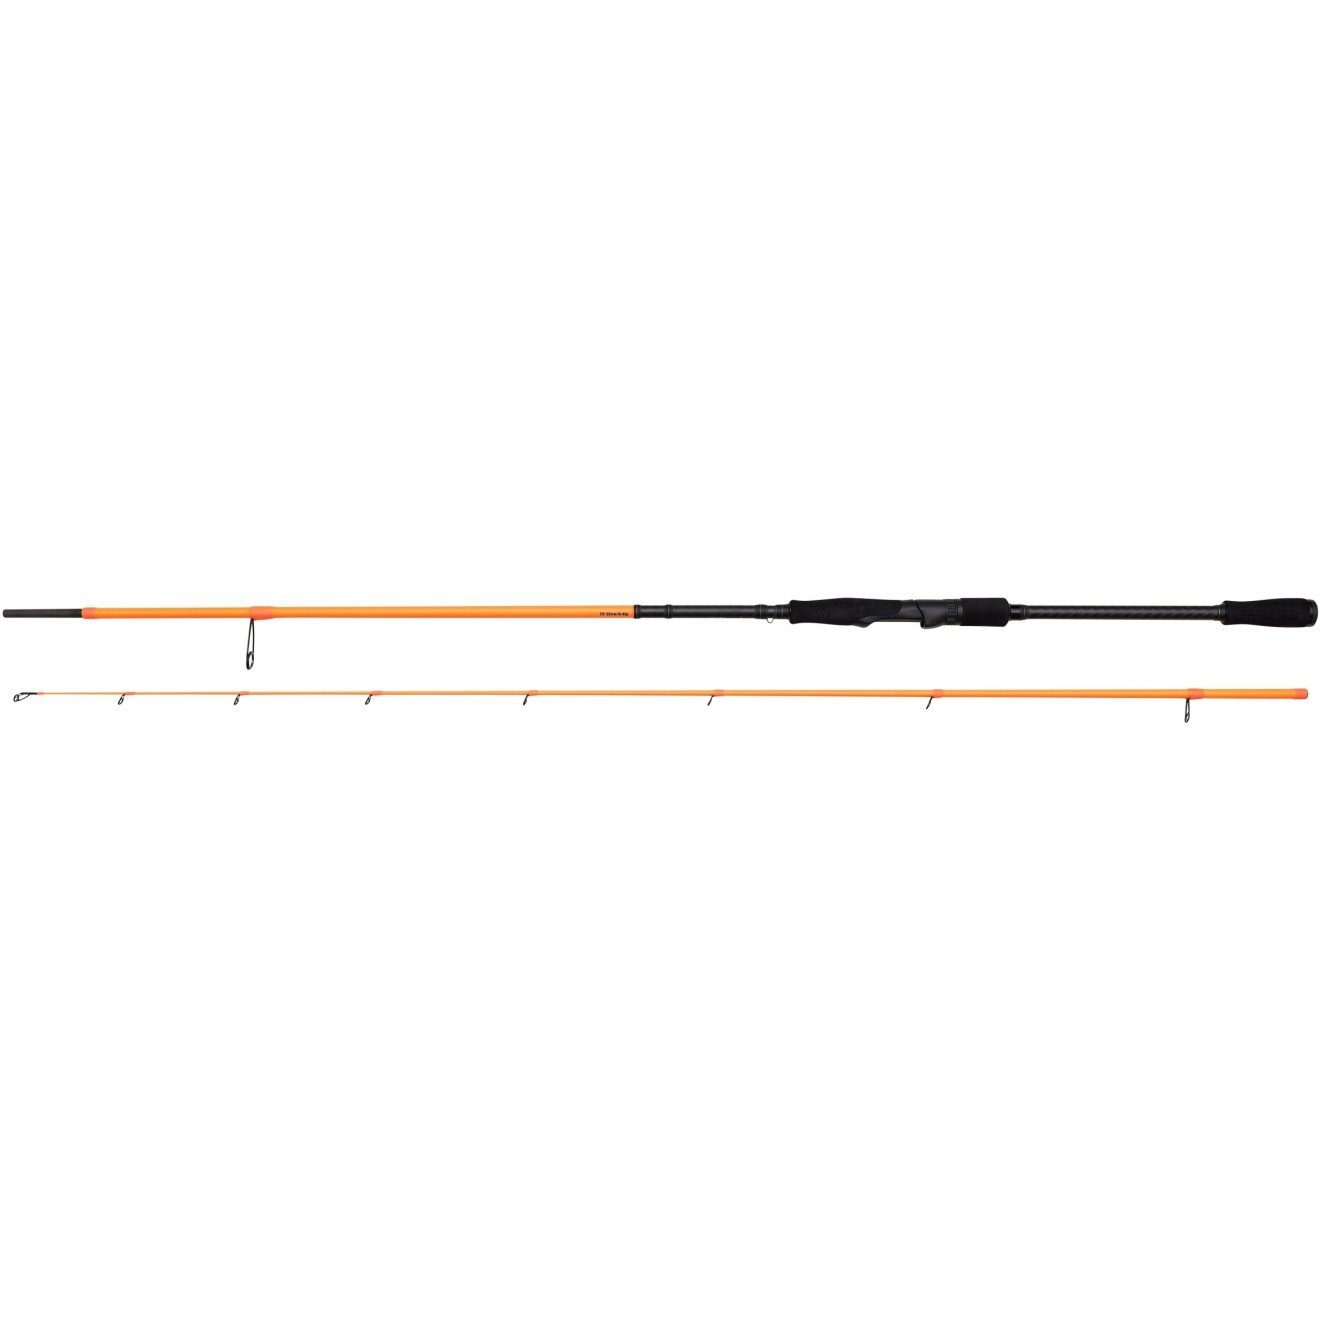 Savage Gear Spinnrute Orange Rod Spin 2,21m 2,13m 2,69m LTD ein ausbalanciert Game Perfekt für Angelruten, Gefühl WG_15-45g optimales Medium 2,51m